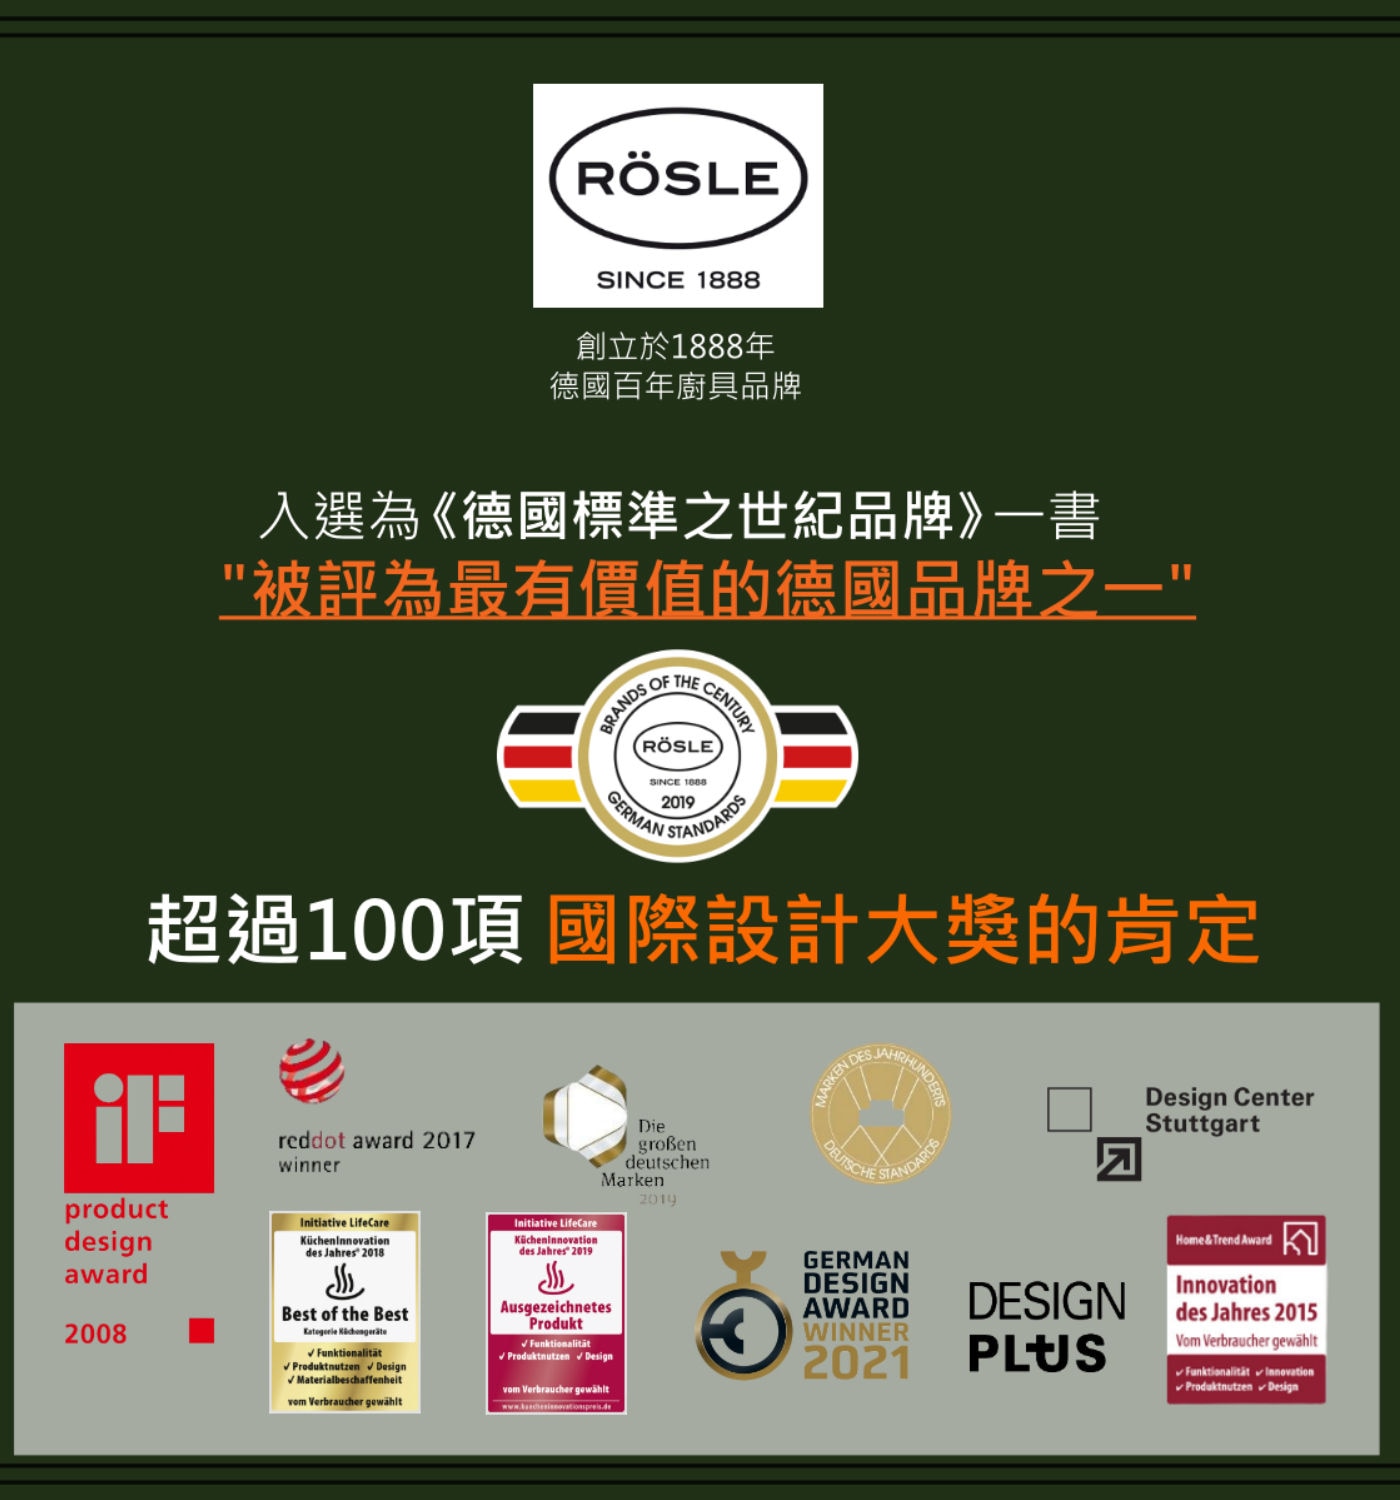 Rosle不鏽鋼馬鈴薯壓泥器RÖSLE創立於1888年德國百年廚具品牌.入選為德國標準之世紀品牌一書被評為最有價值的德國品牌之一超過100項國際設計大獎的肯定